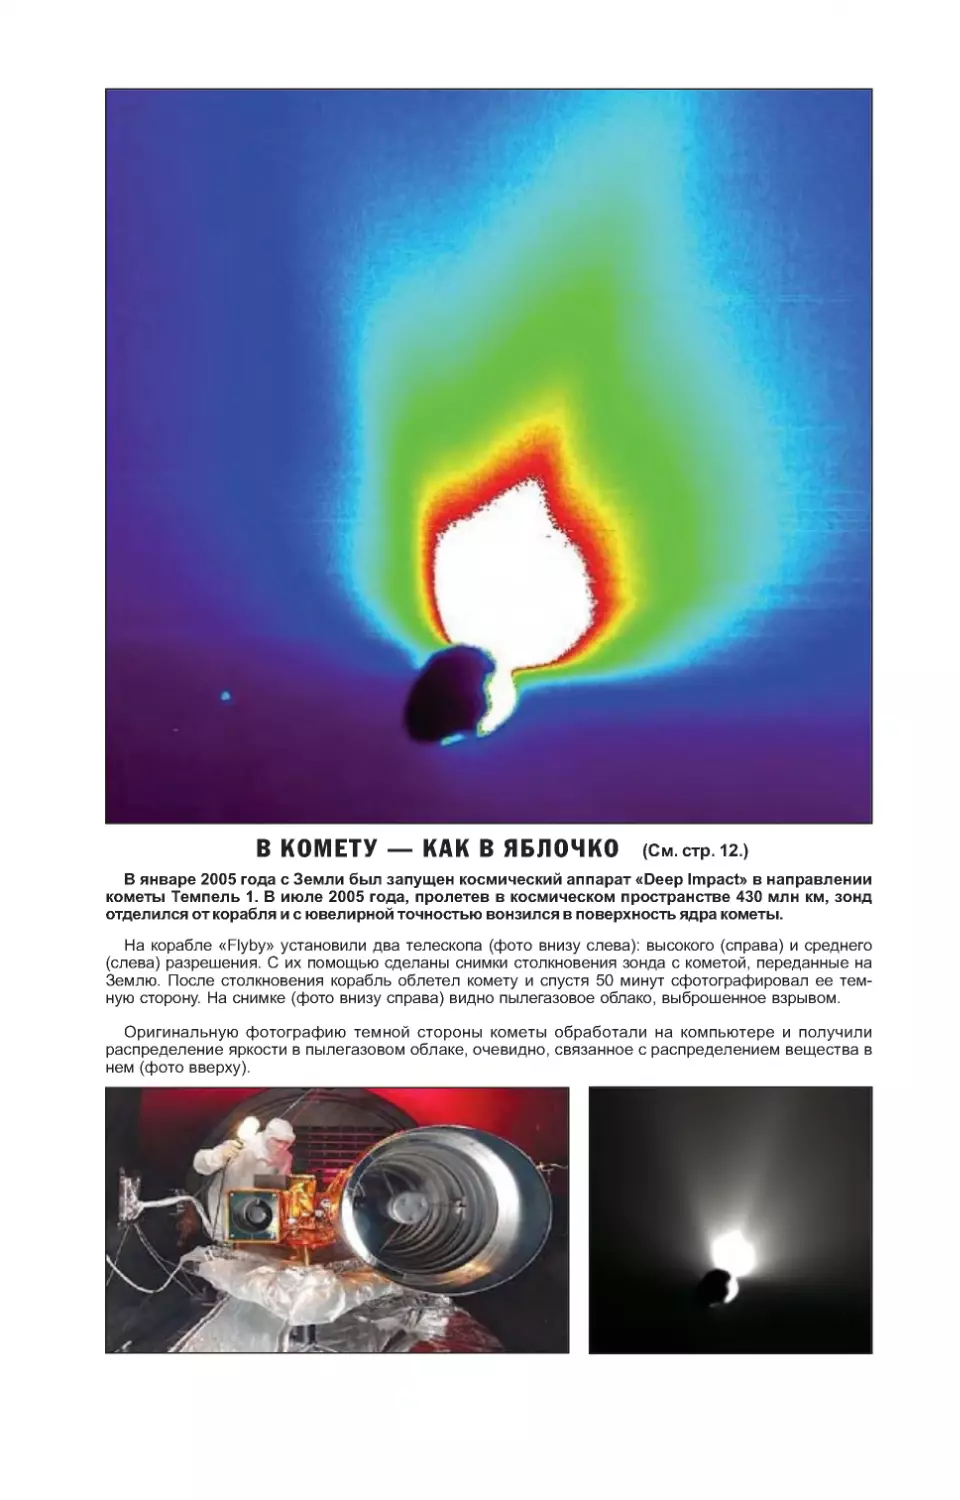 Темная сторона кометы Темпель 1. Фотографии сделаны телескопами космического корабля \